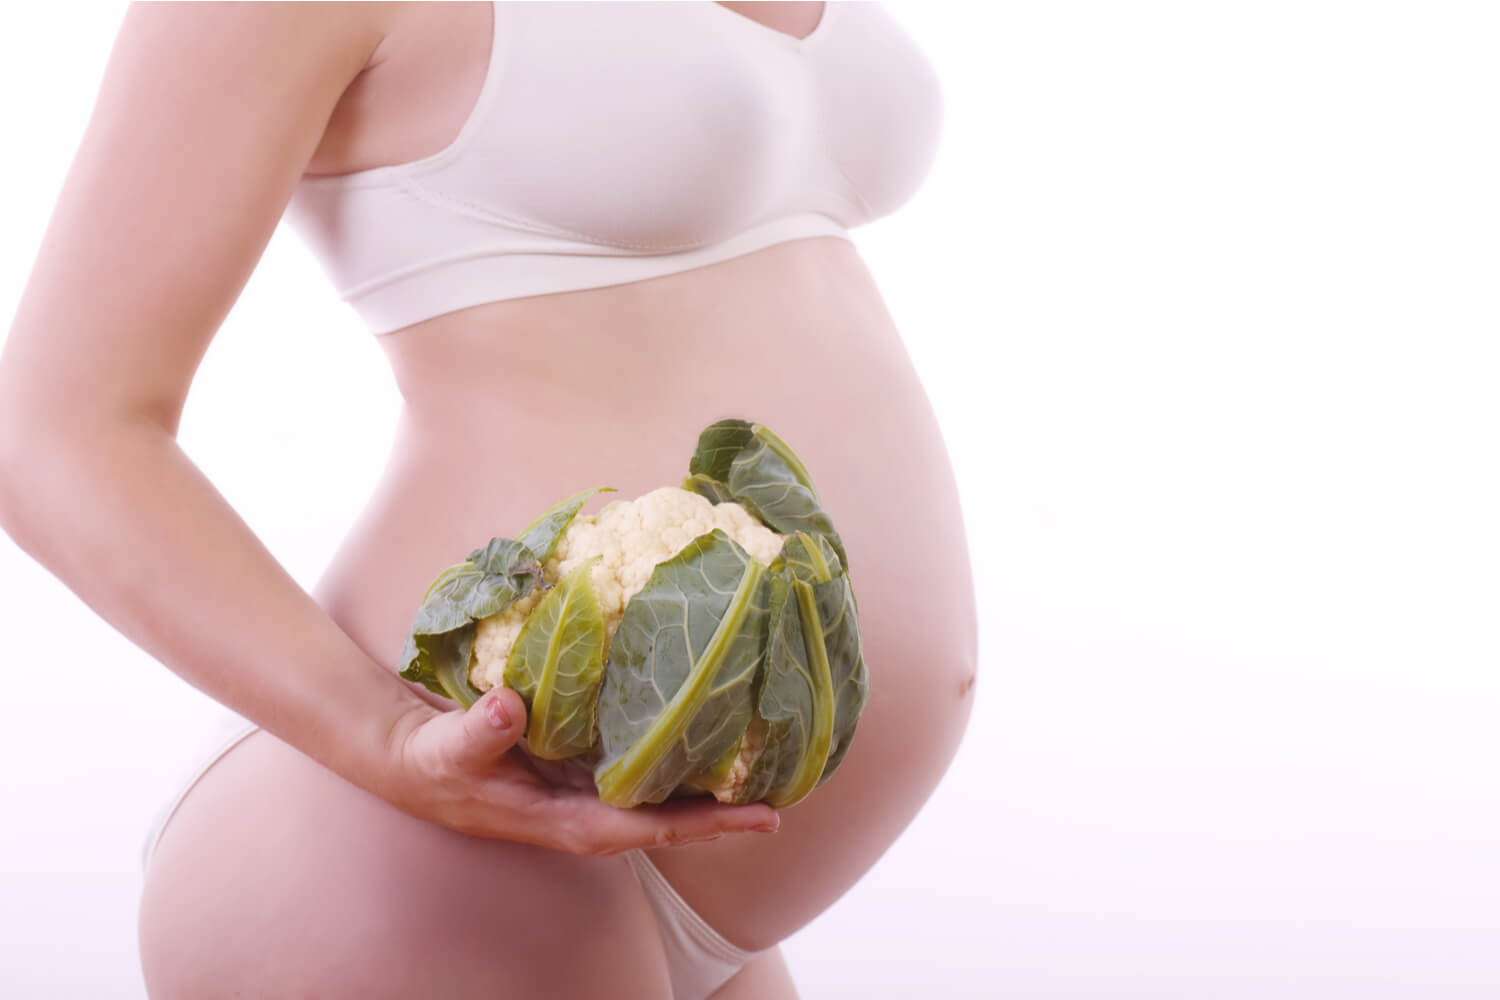 Cauliflower during pregnancy 